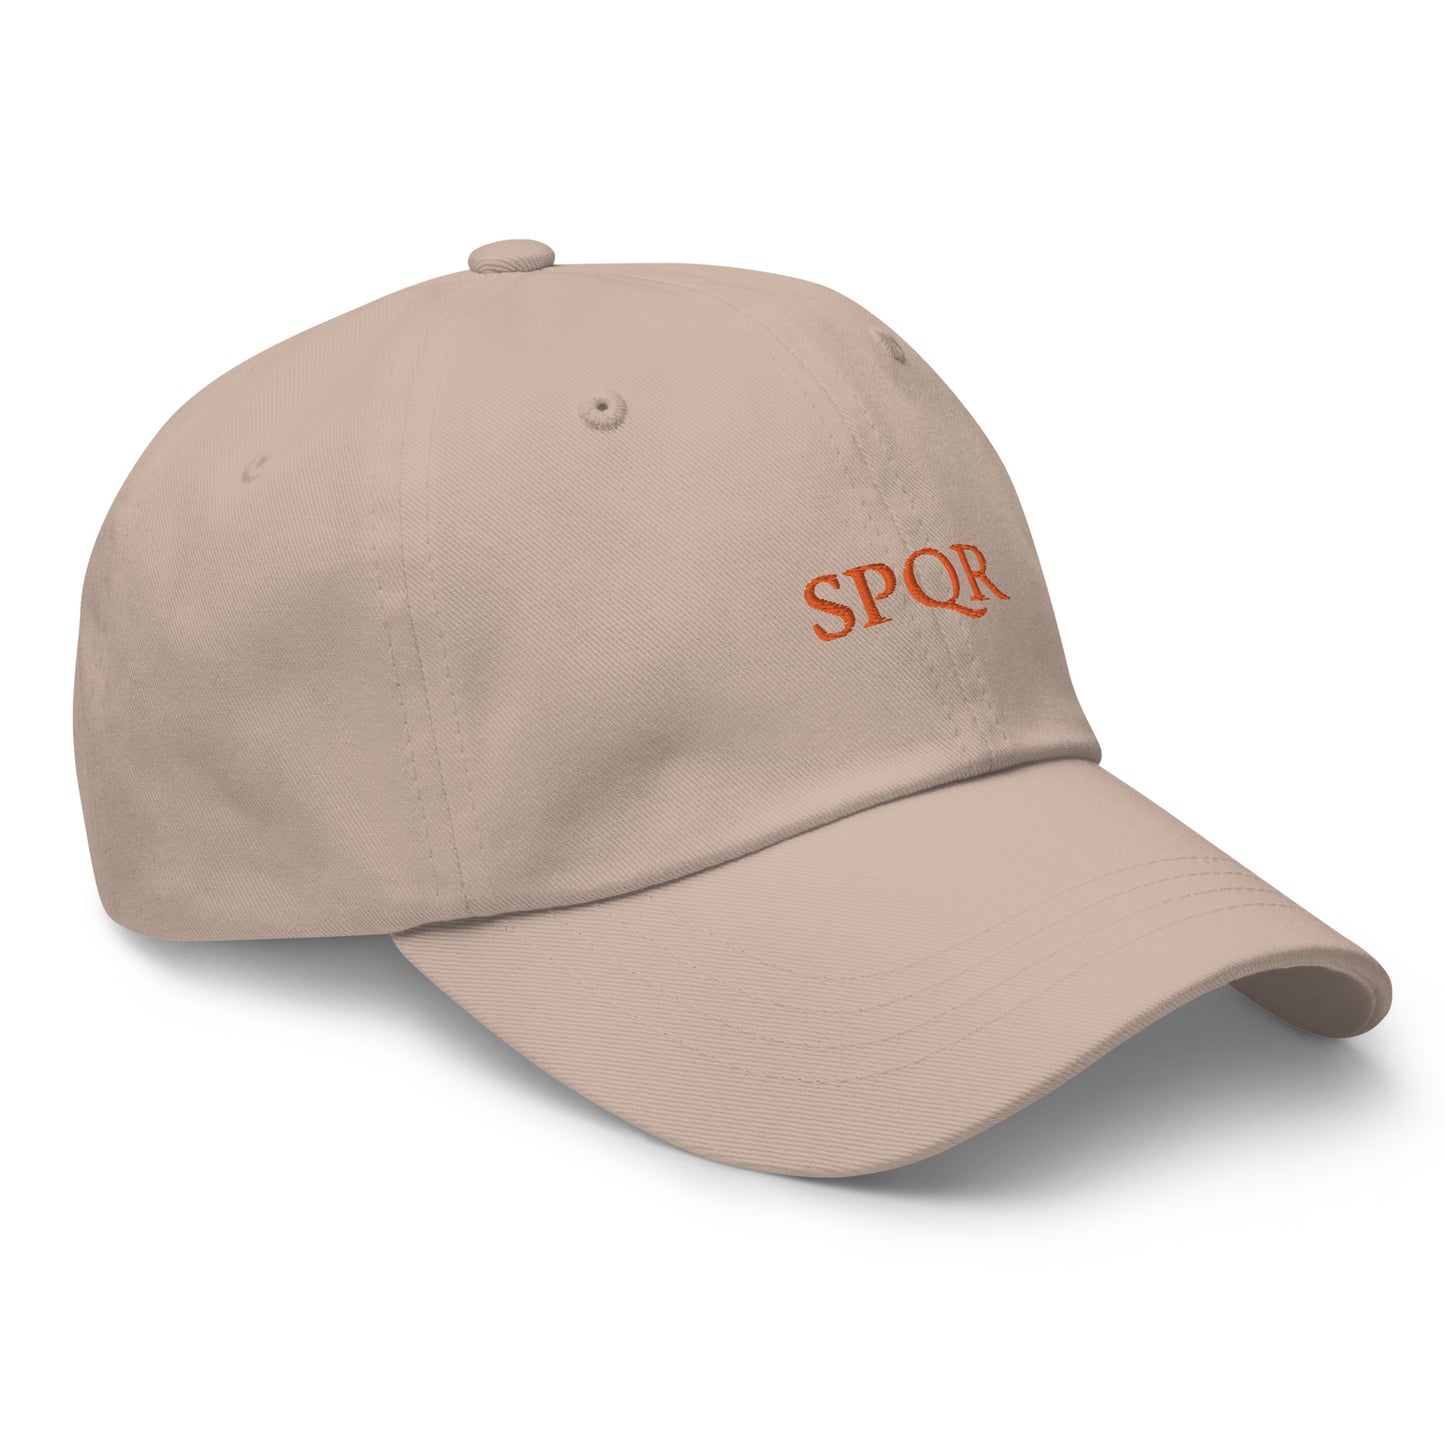 Cappello SPQR